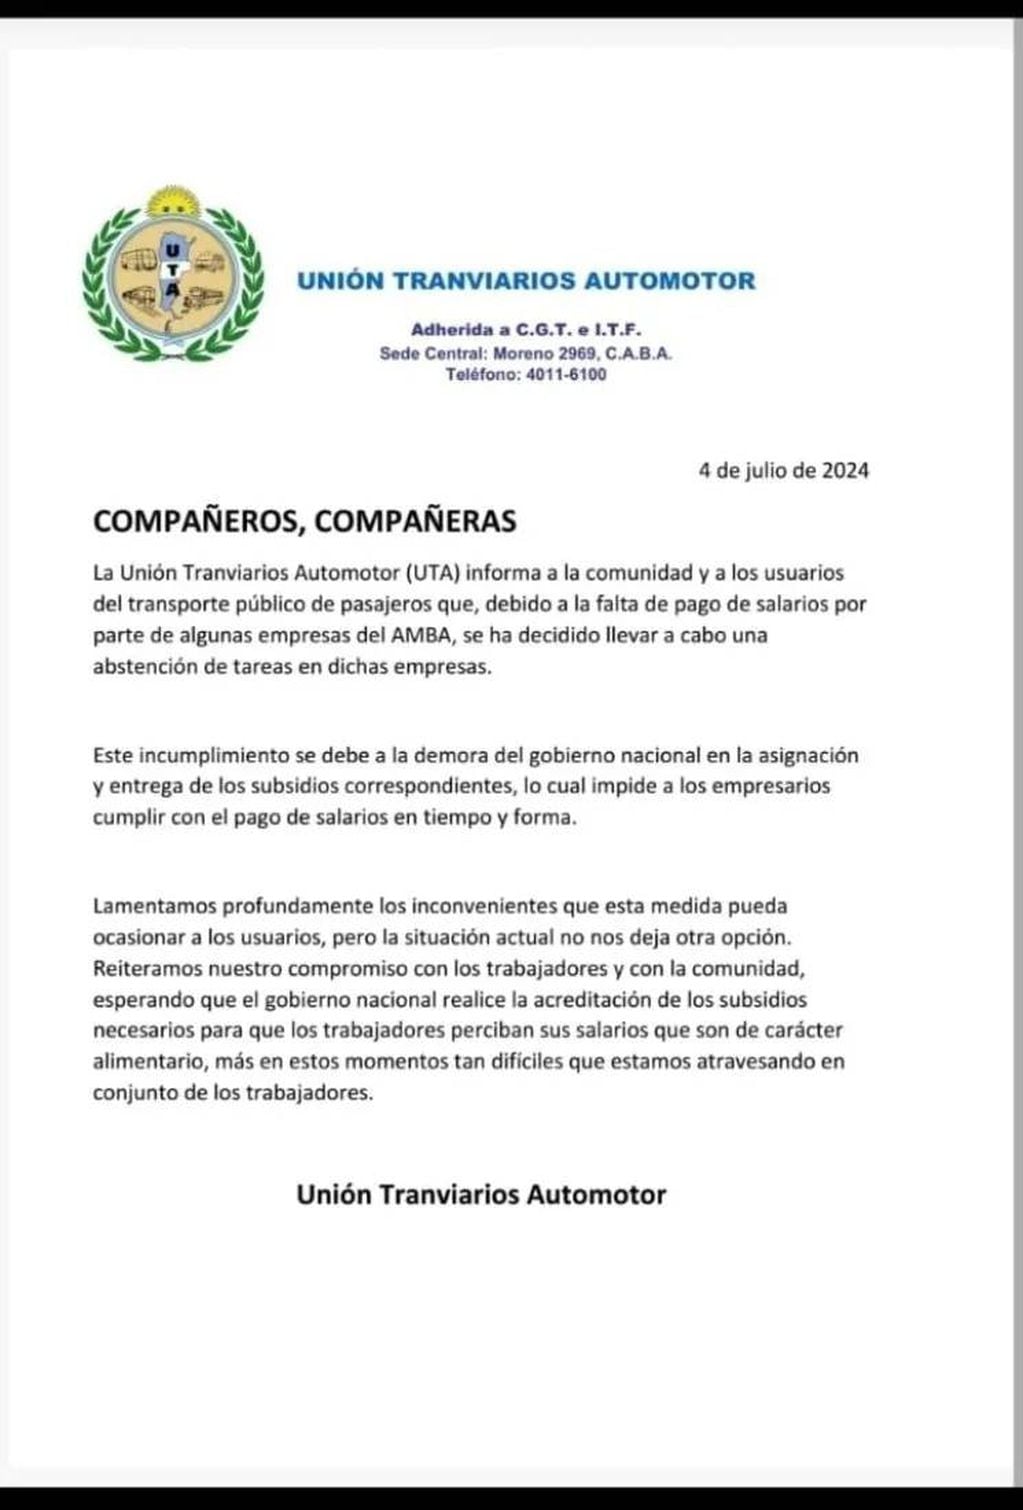 El comunicado de la UTA ante la abstención de tareas.